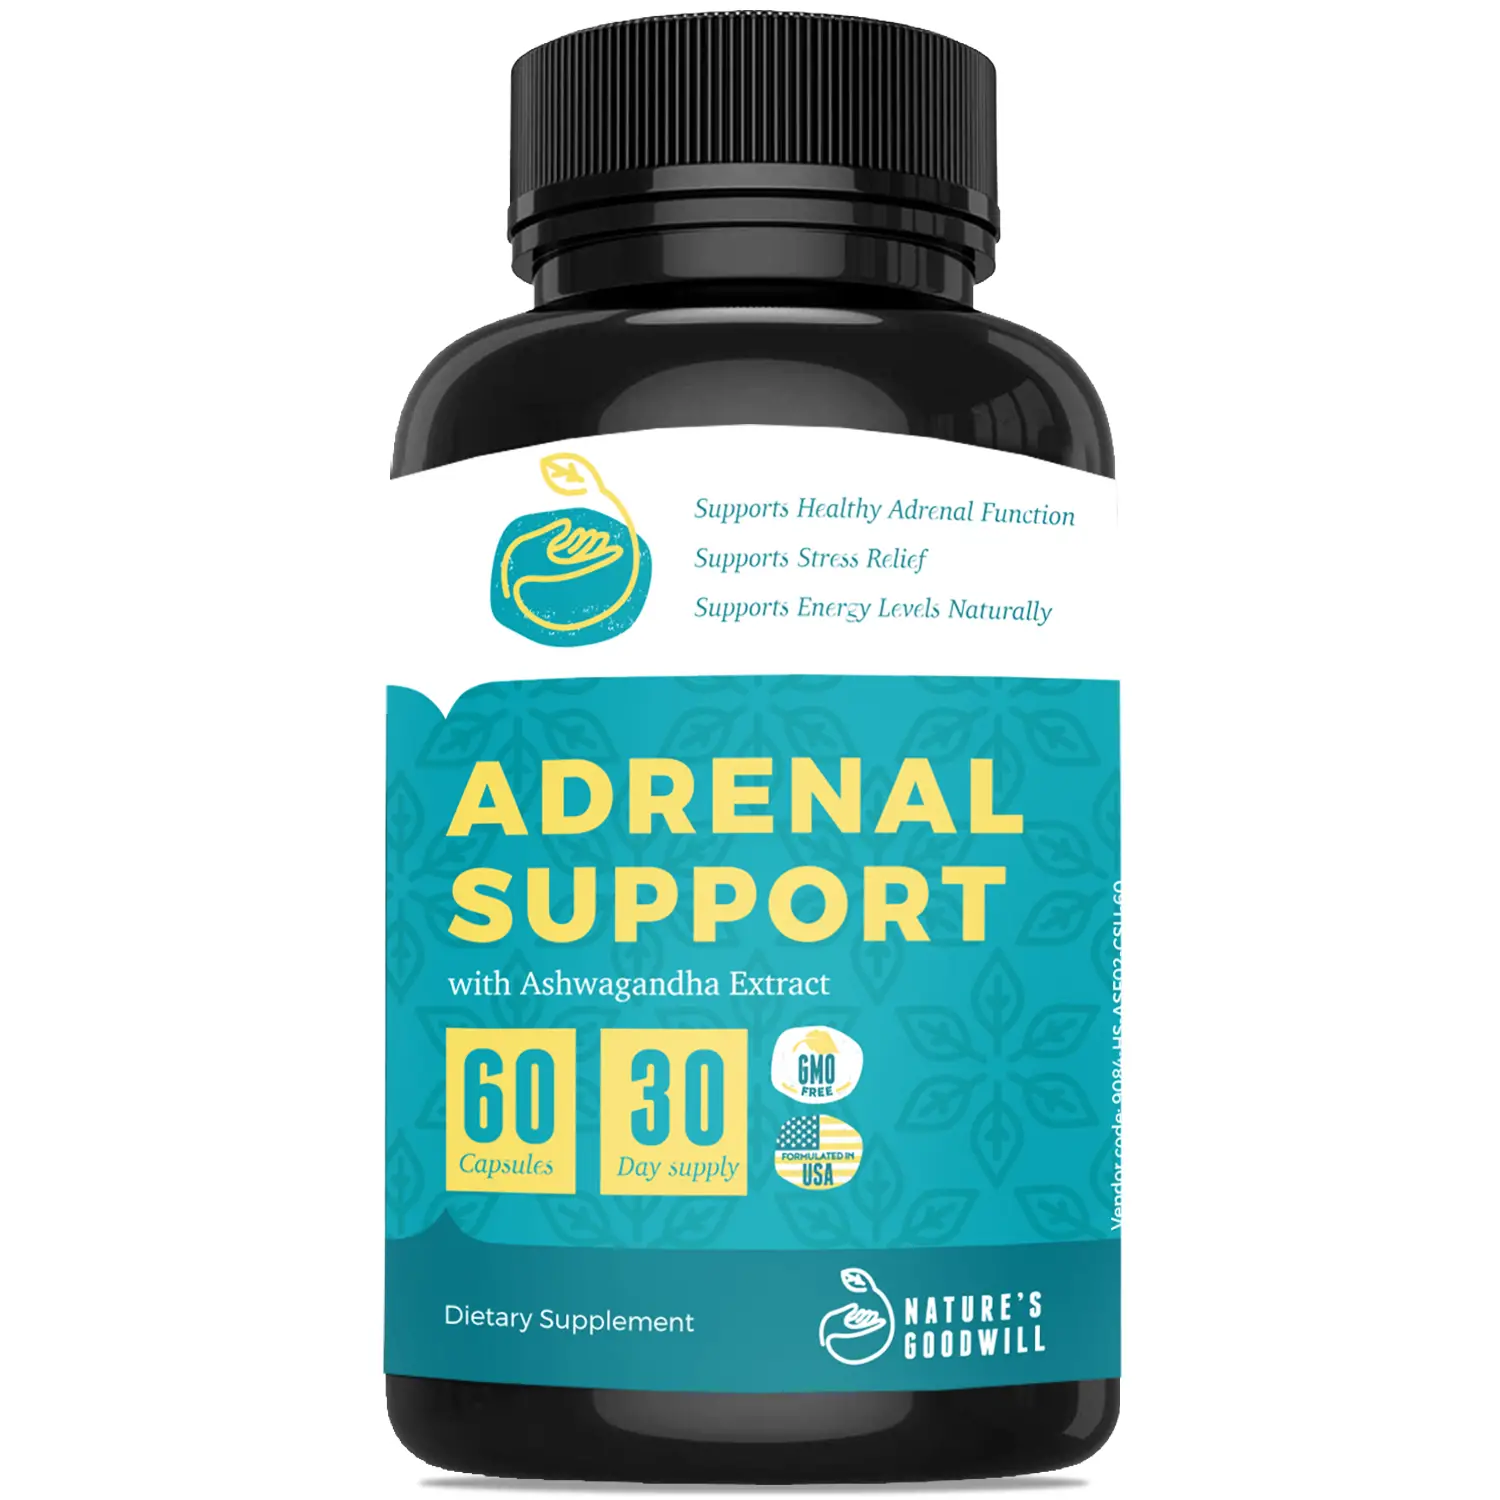 Adrenal Health Supplements Benefits